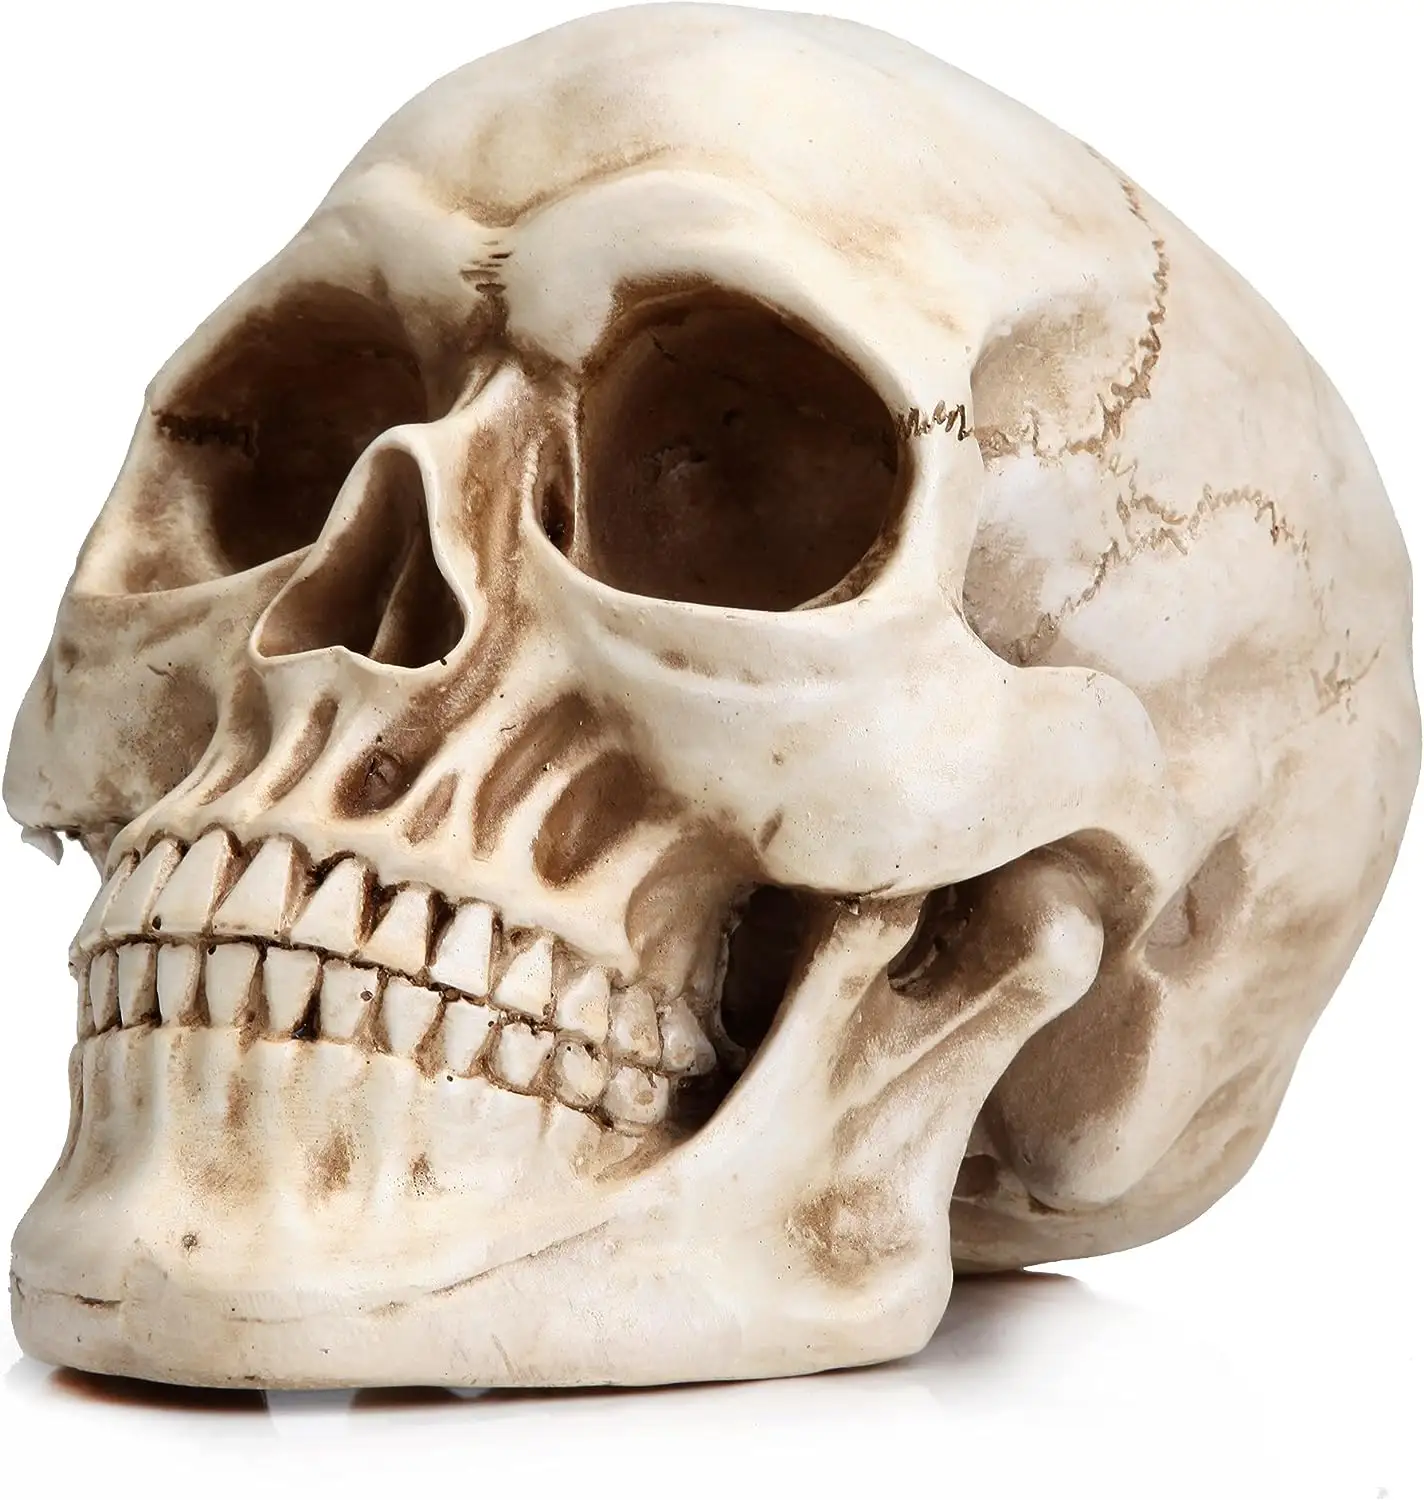 ハロウィーンの人間の頭蓋骨モデル等身大の人間の頭蓋骨モデル1:1レプリカリアルな人間の大人の頭蓋骨頭の骨モデル